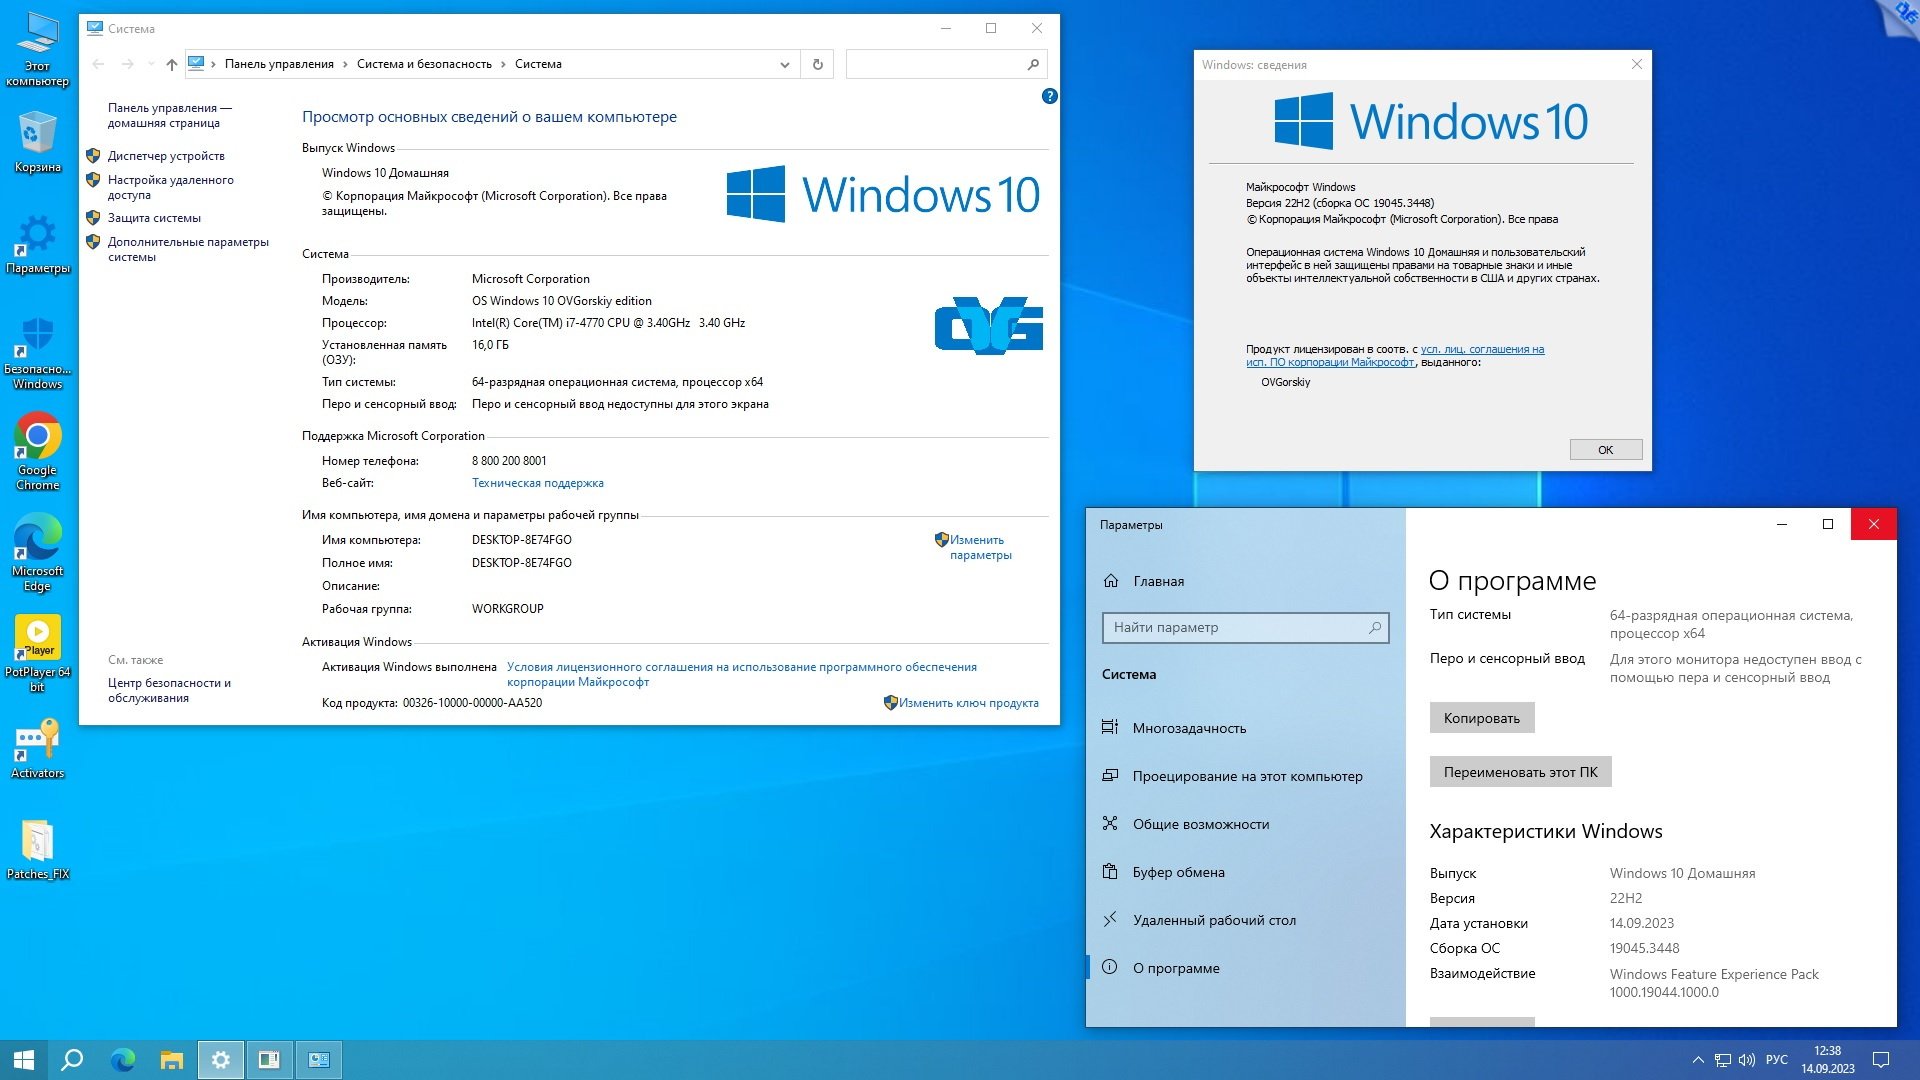 Windows 10 Pro компьютер. Windows 10 OVGORSKIY Edition. Как узнать сборку виндовс 10 на своем компьютере. Quick assist Windows 10 на русском.